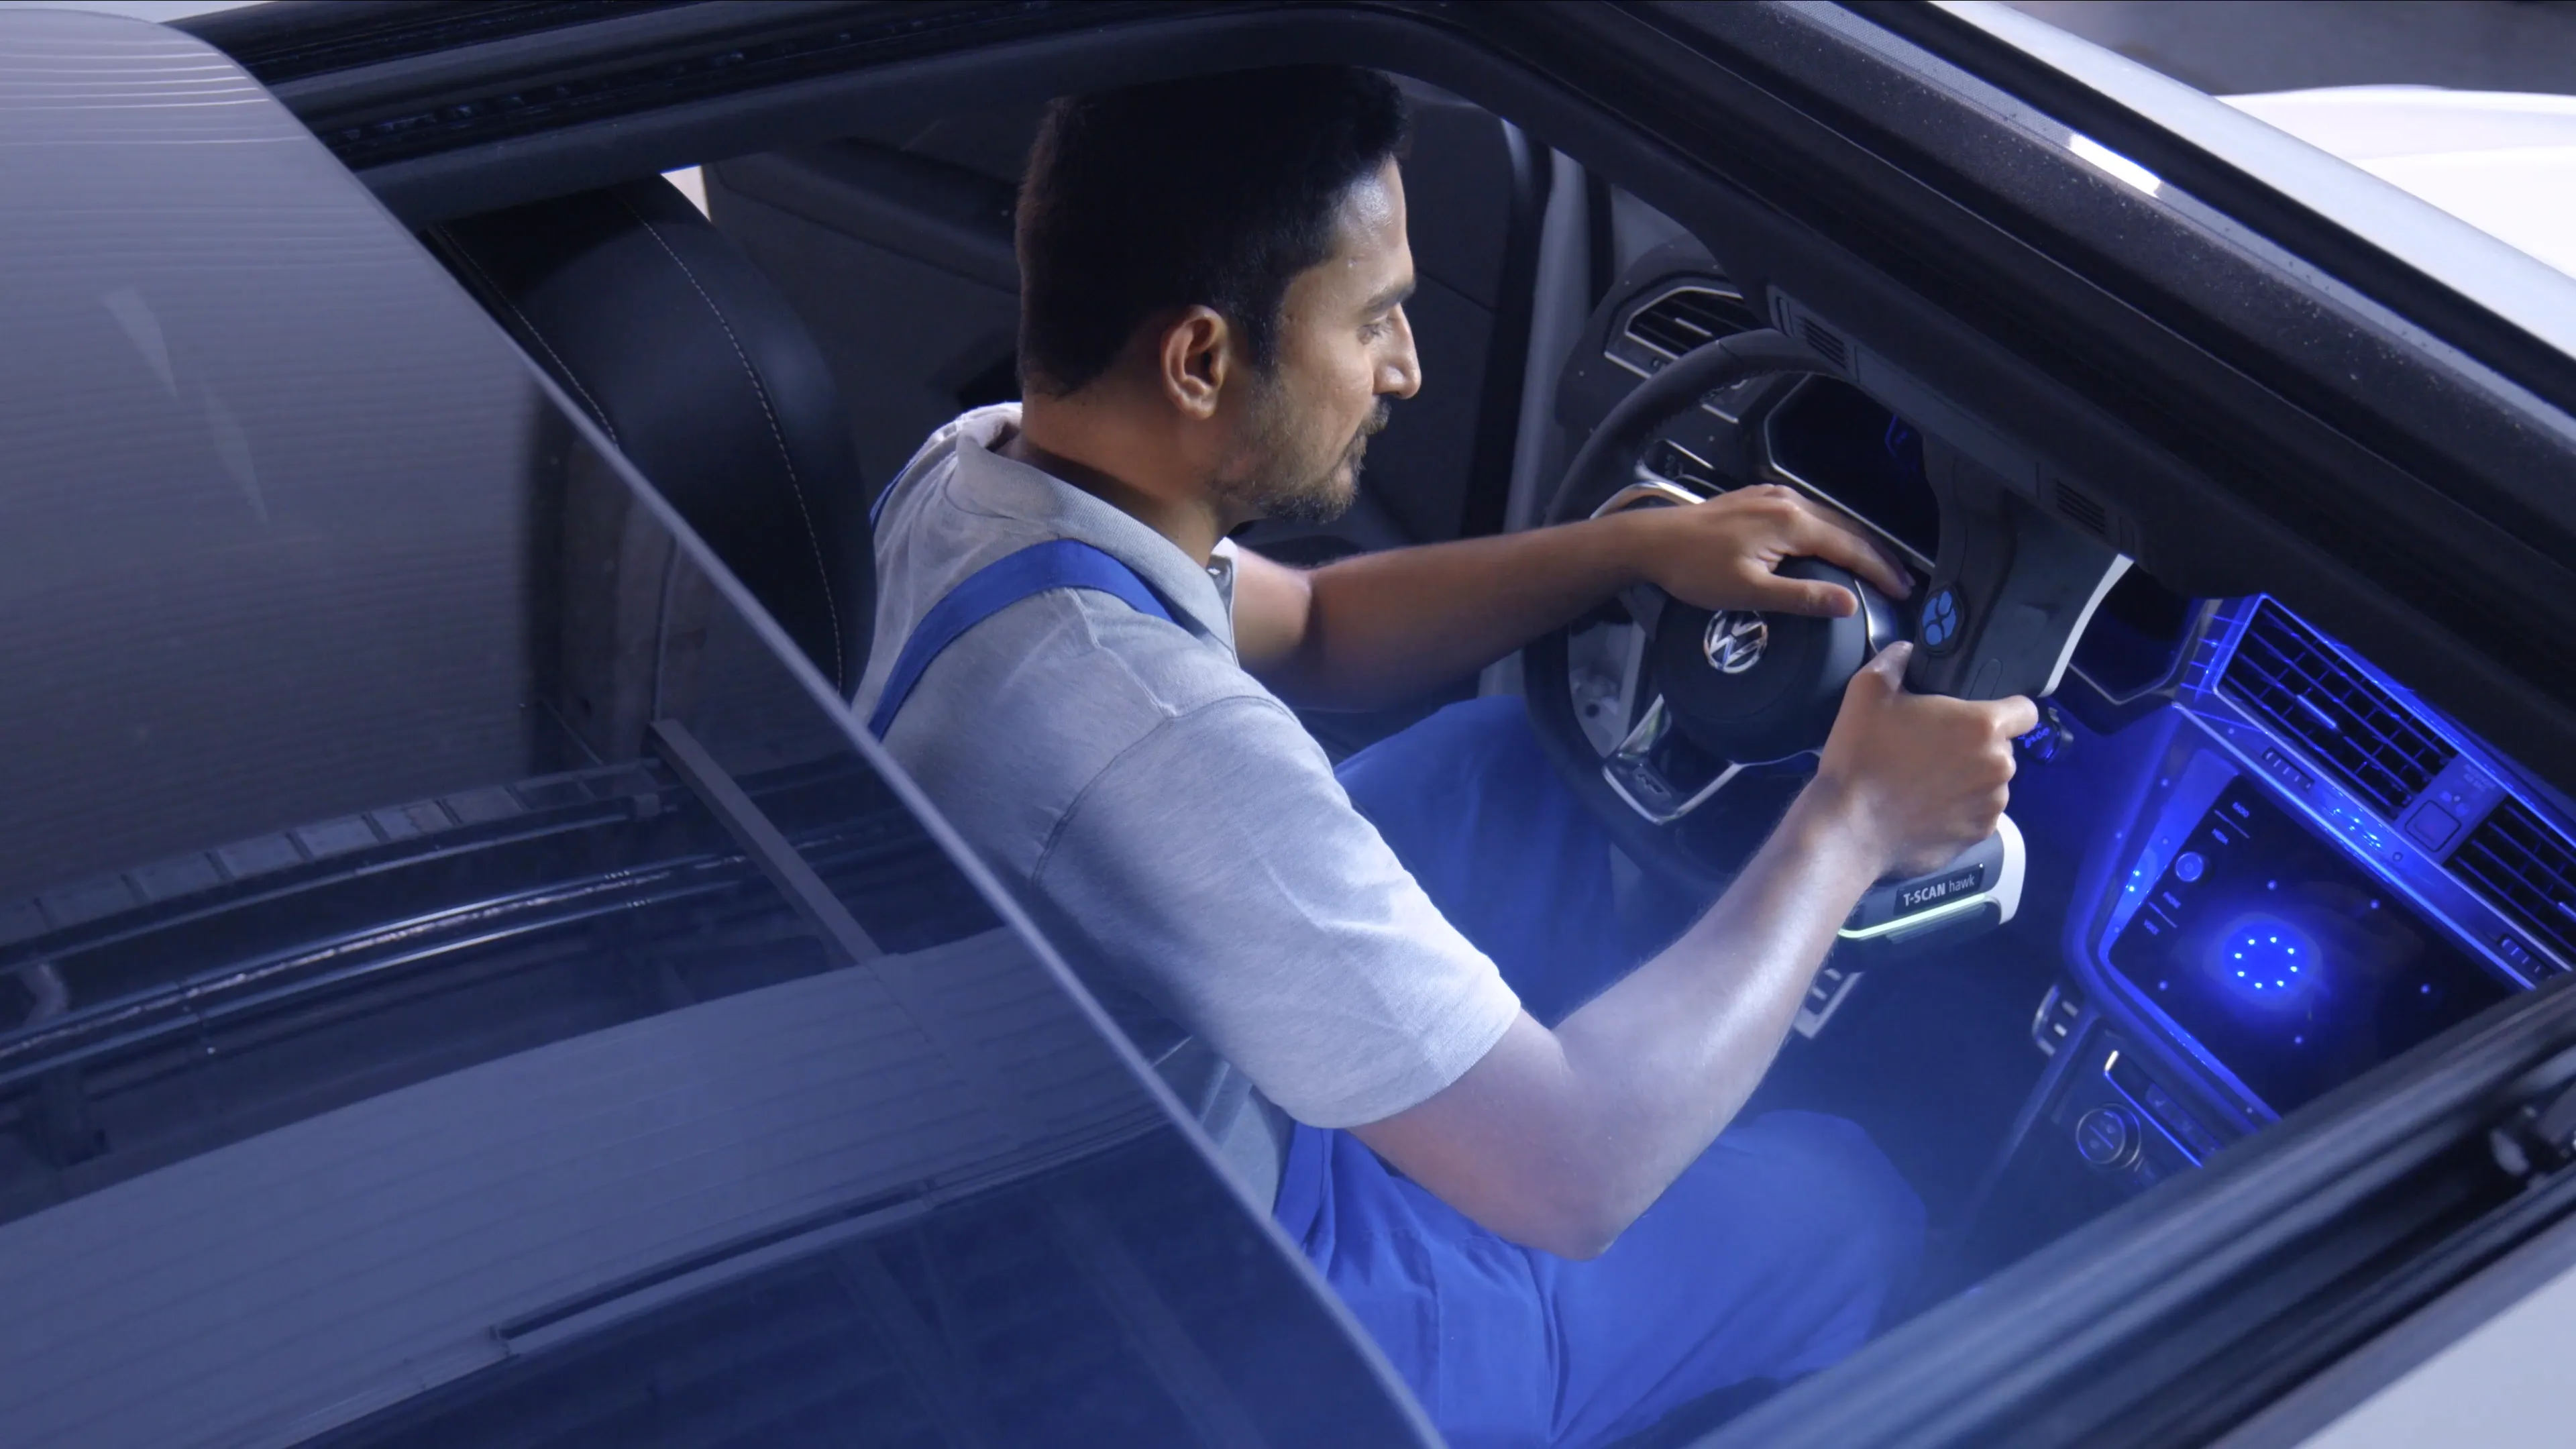 Ein Techniker sitzt in einem Auto und scannt mit einem Handscanner das Amaturenbrett für eine Autoproduktion.